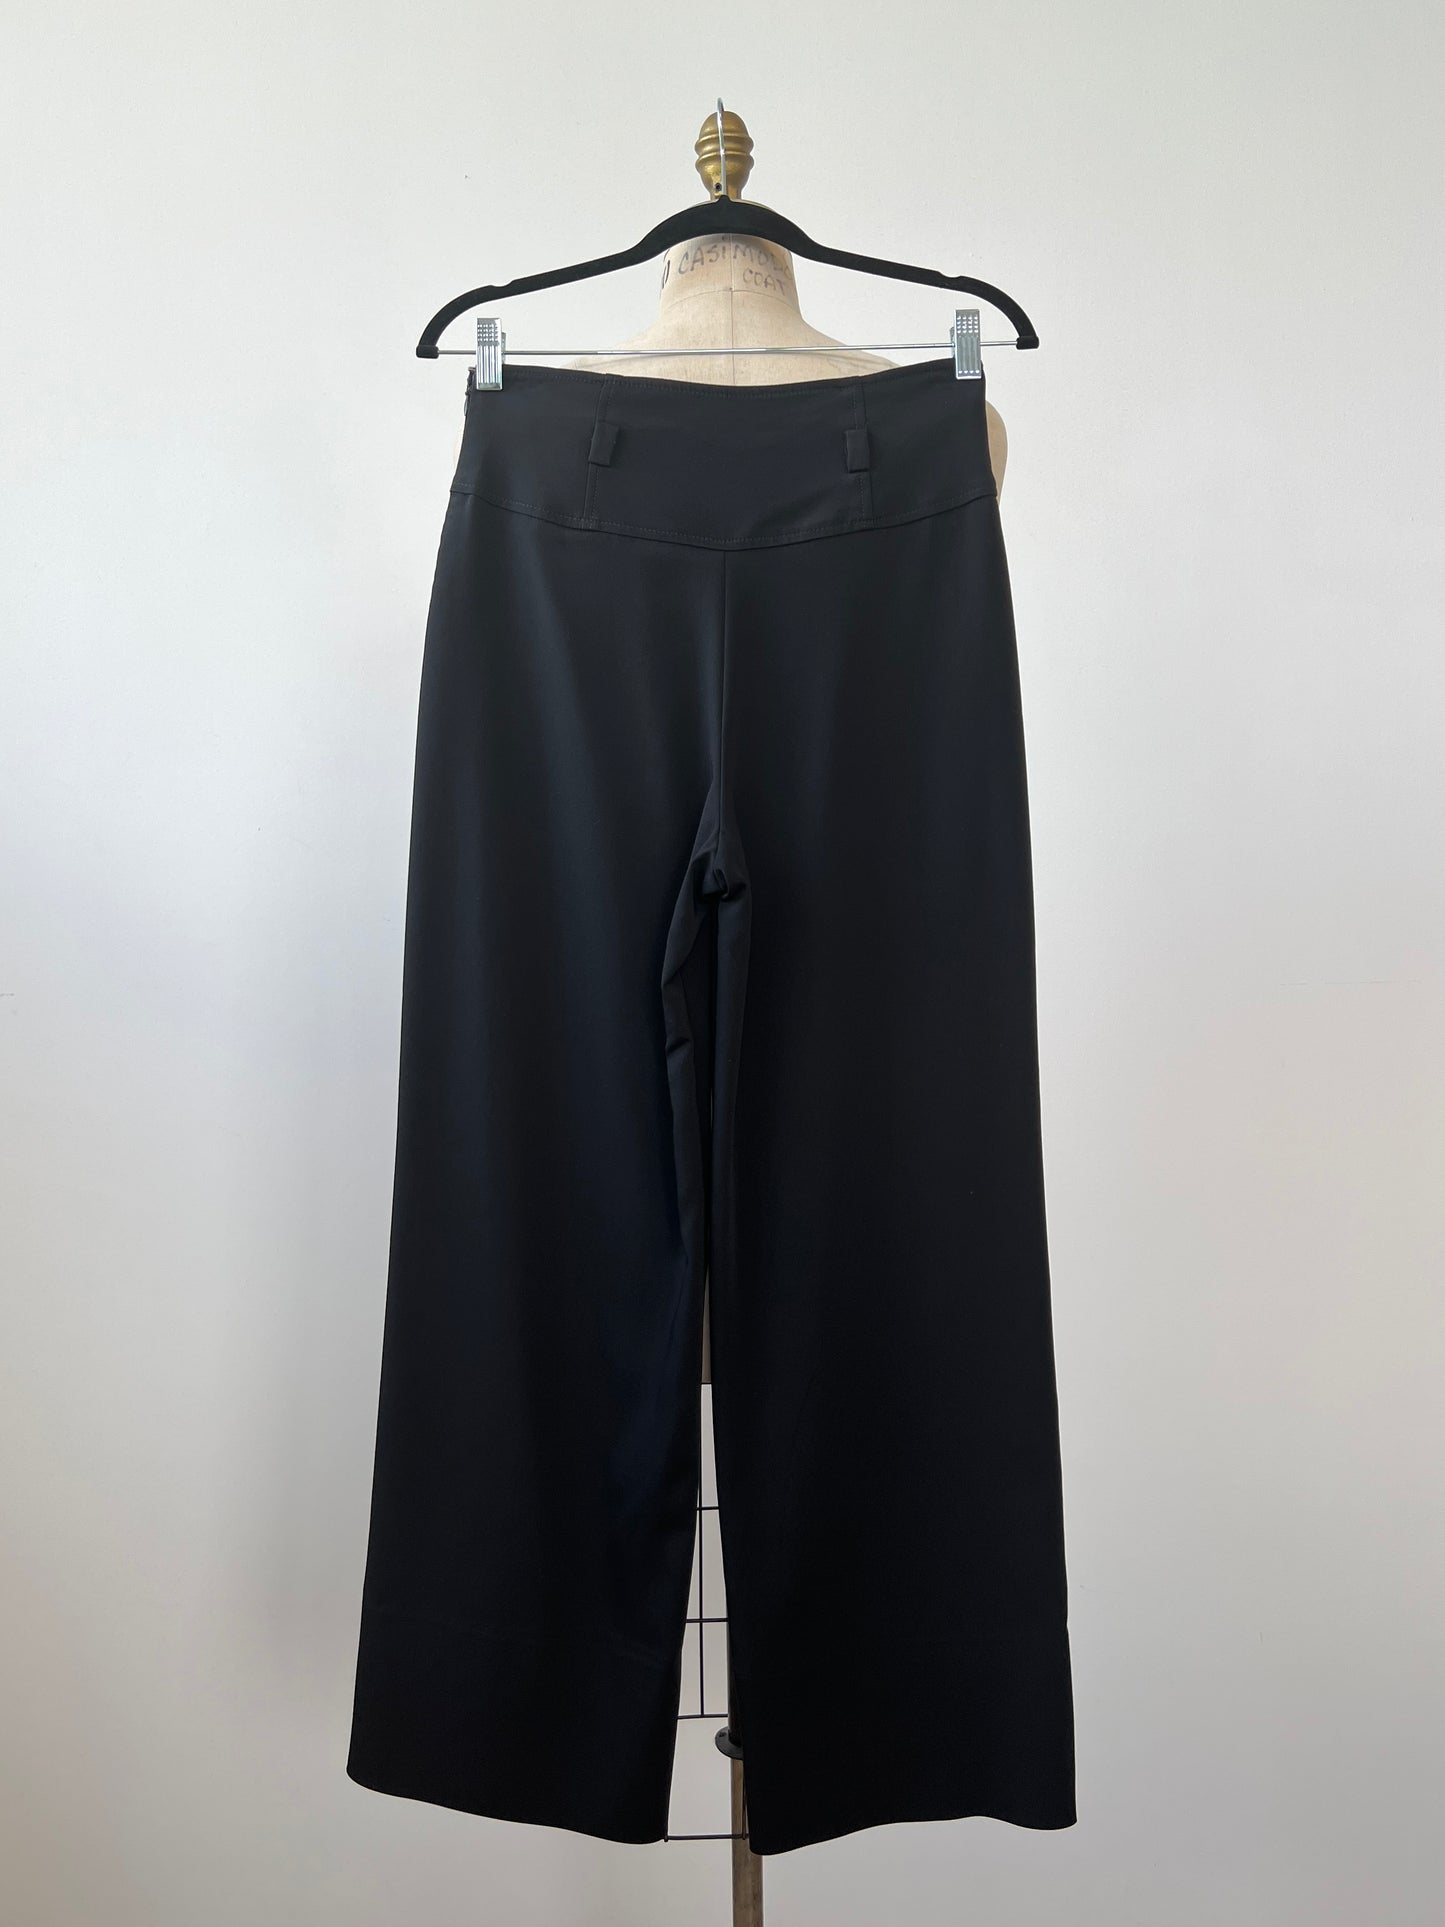 Pantalon taille haute noir à jambe large (4)